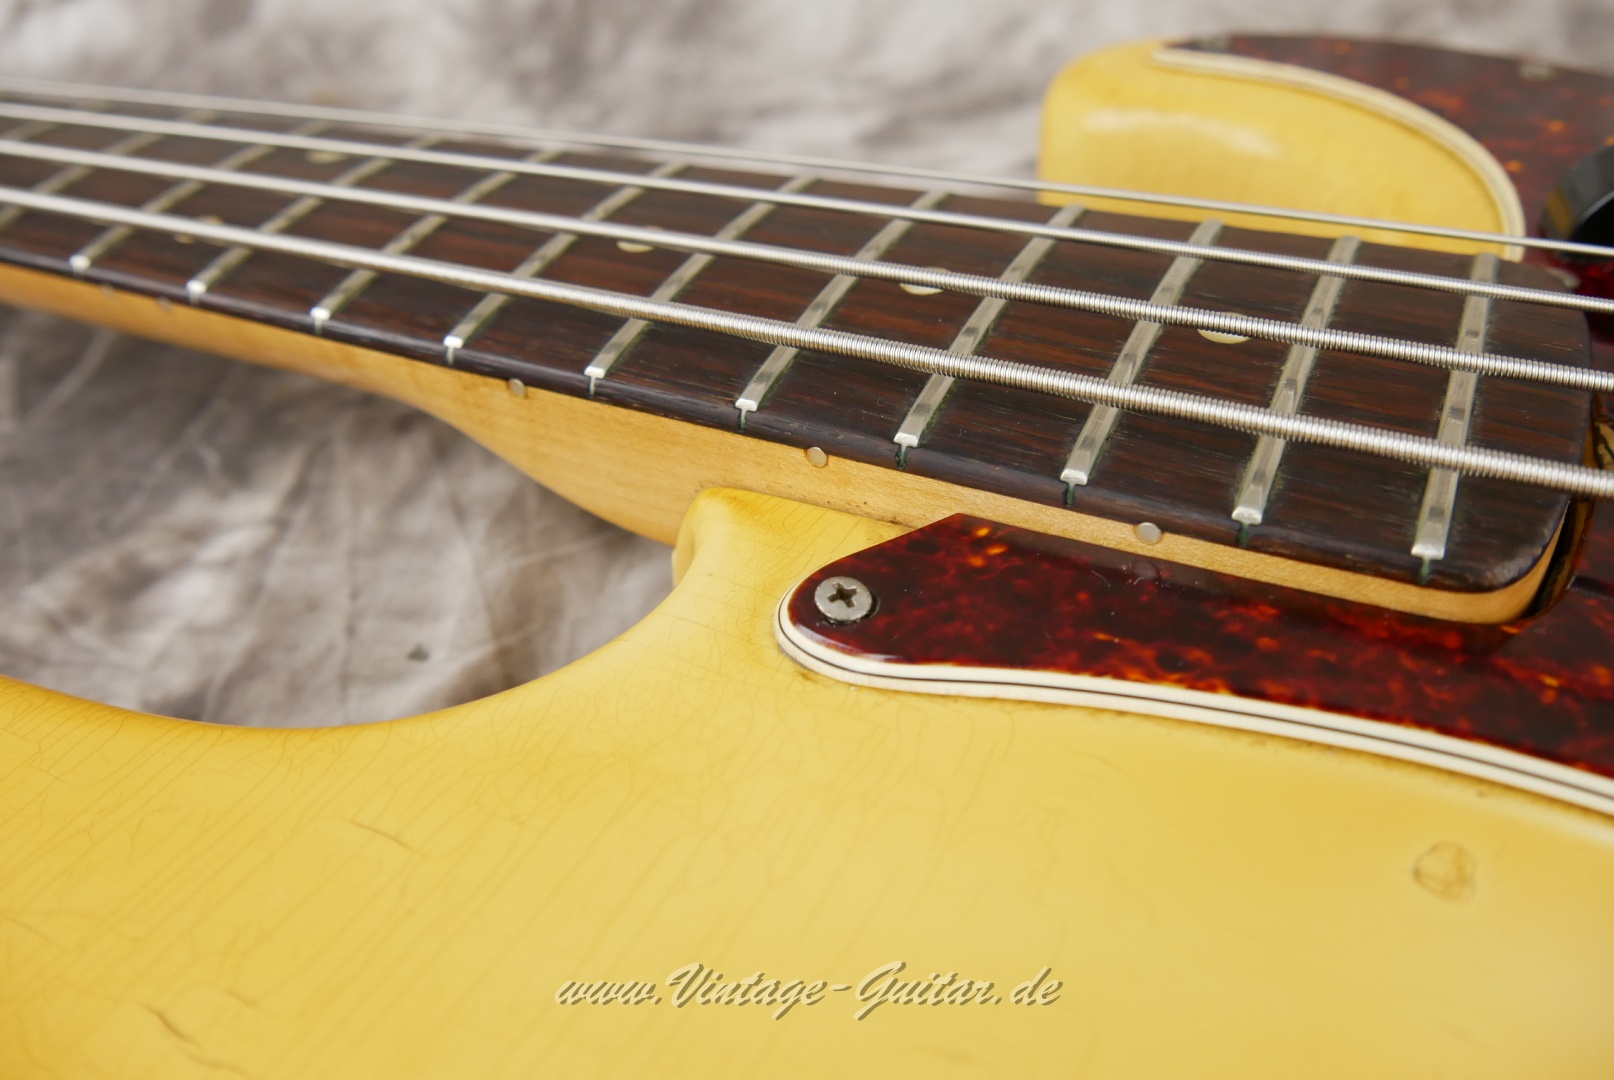 Fender-Precision-Bass-1969-olympic-white-001019.JPG